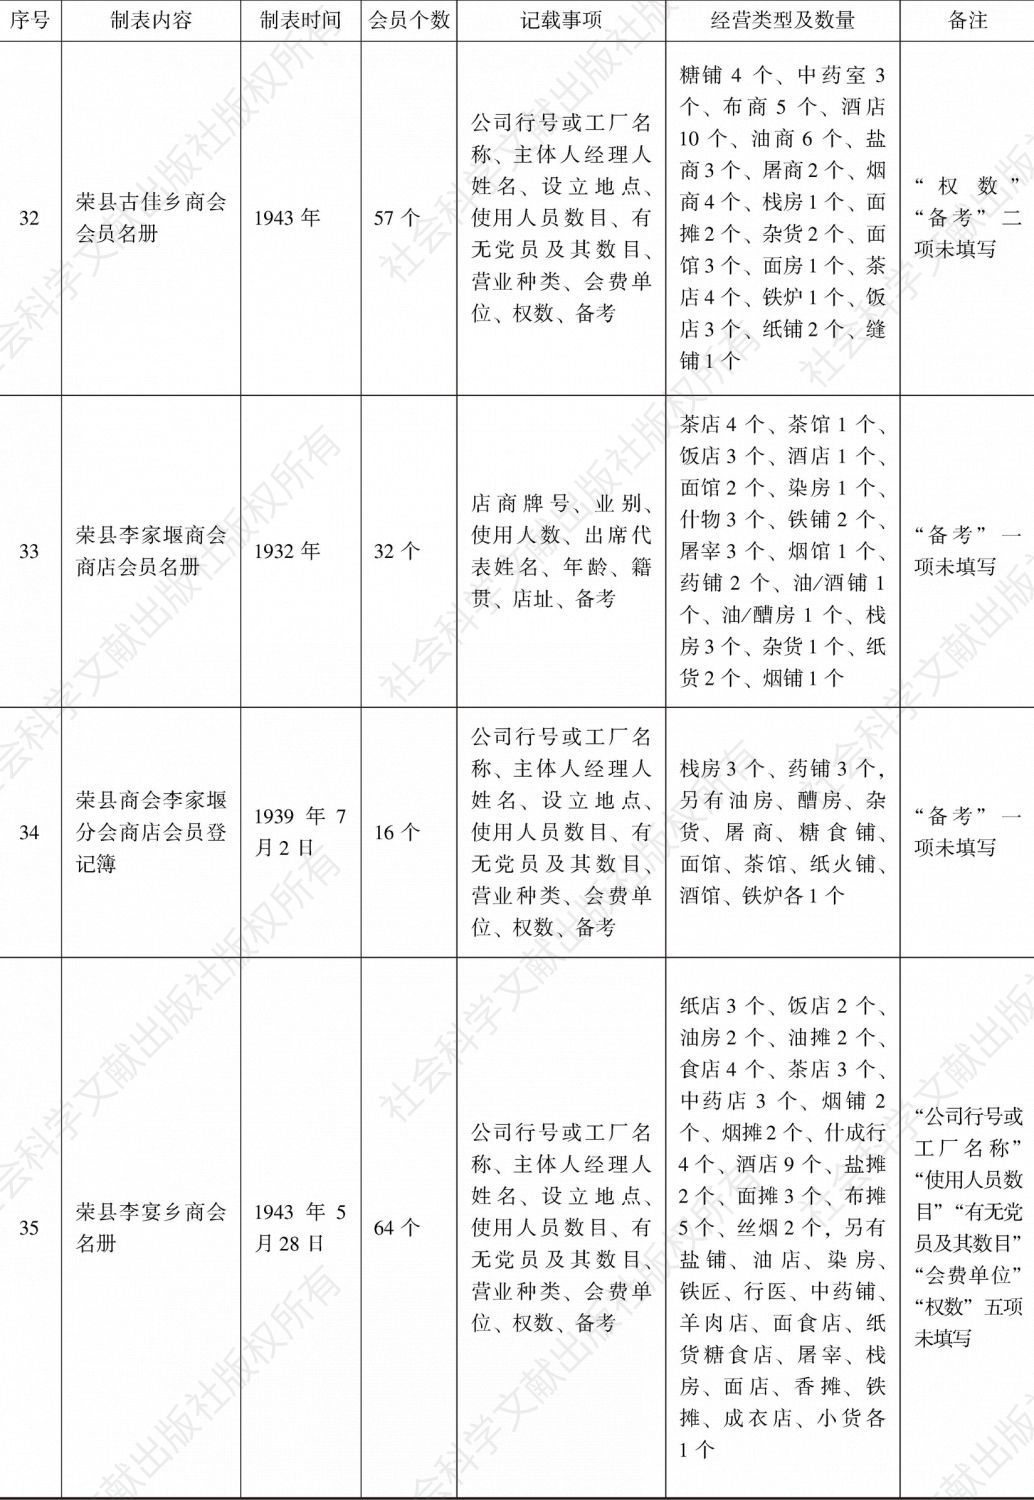 荣县商会事务分所造报名册汇编-续表8